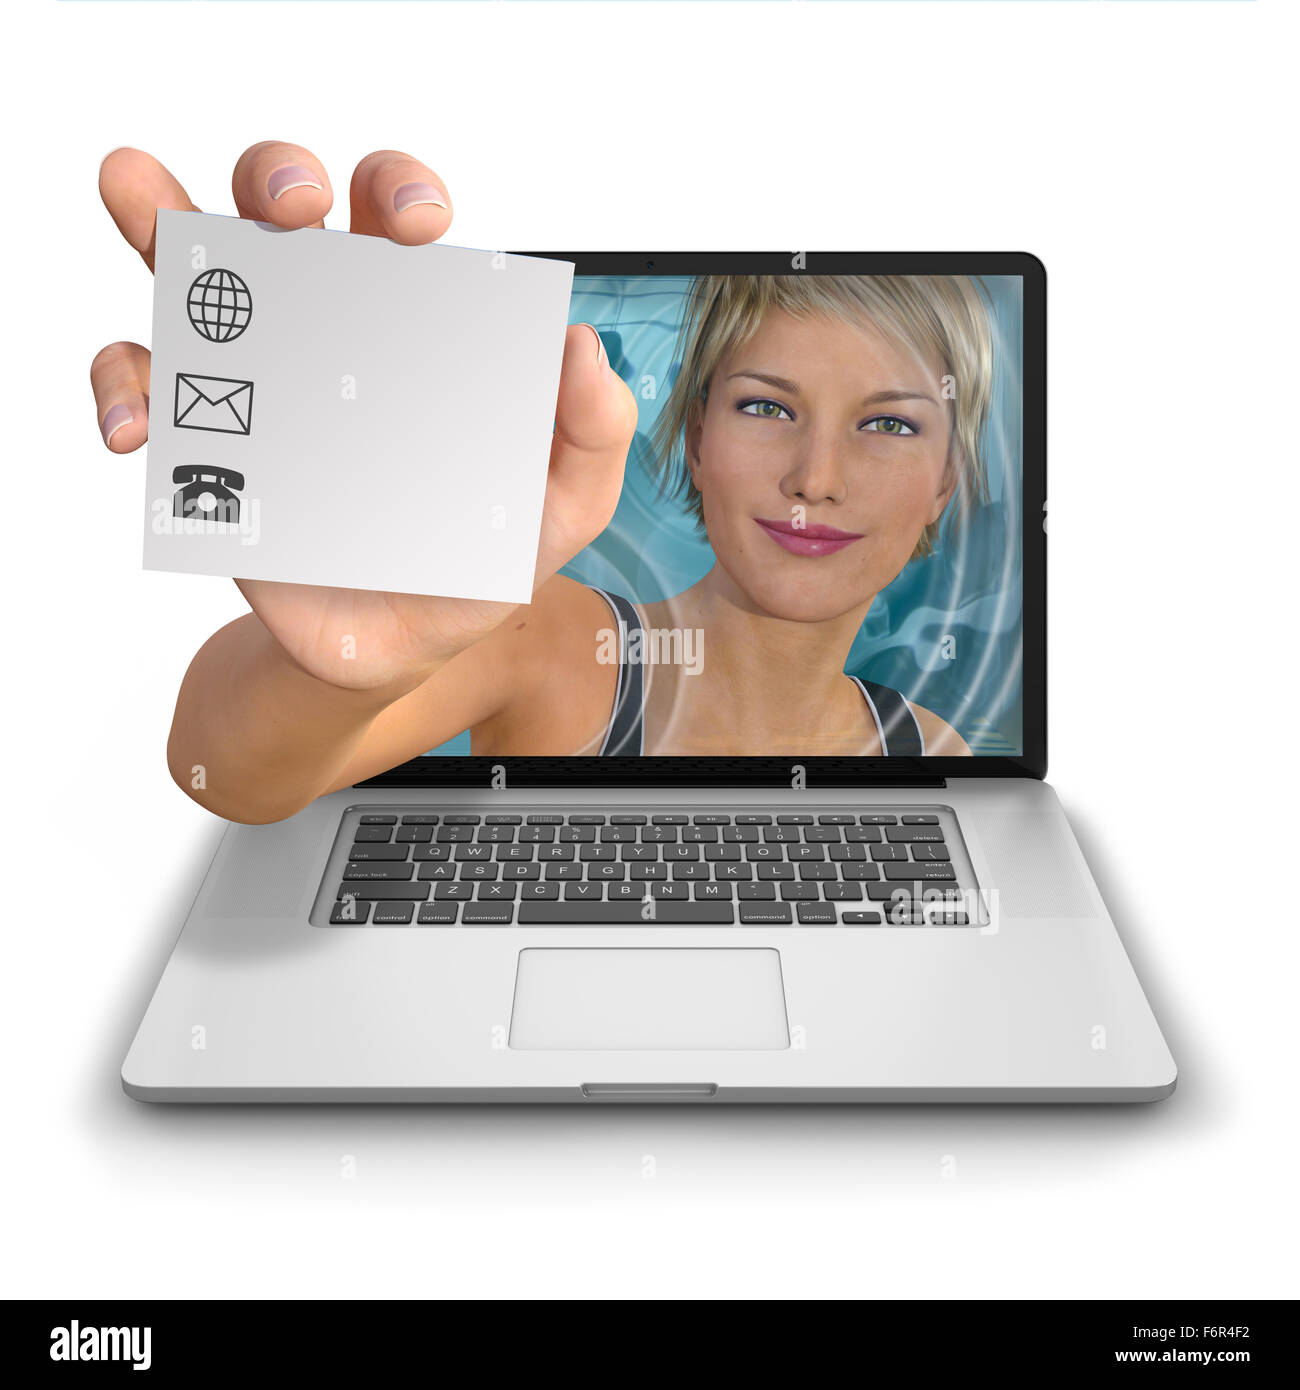 Giovane donna di portata di mano fuori dall'interno di un computer portatile in possesso di una scheda di contatto con un logo con spazio per aggiungere il contatto deta Foto Stock